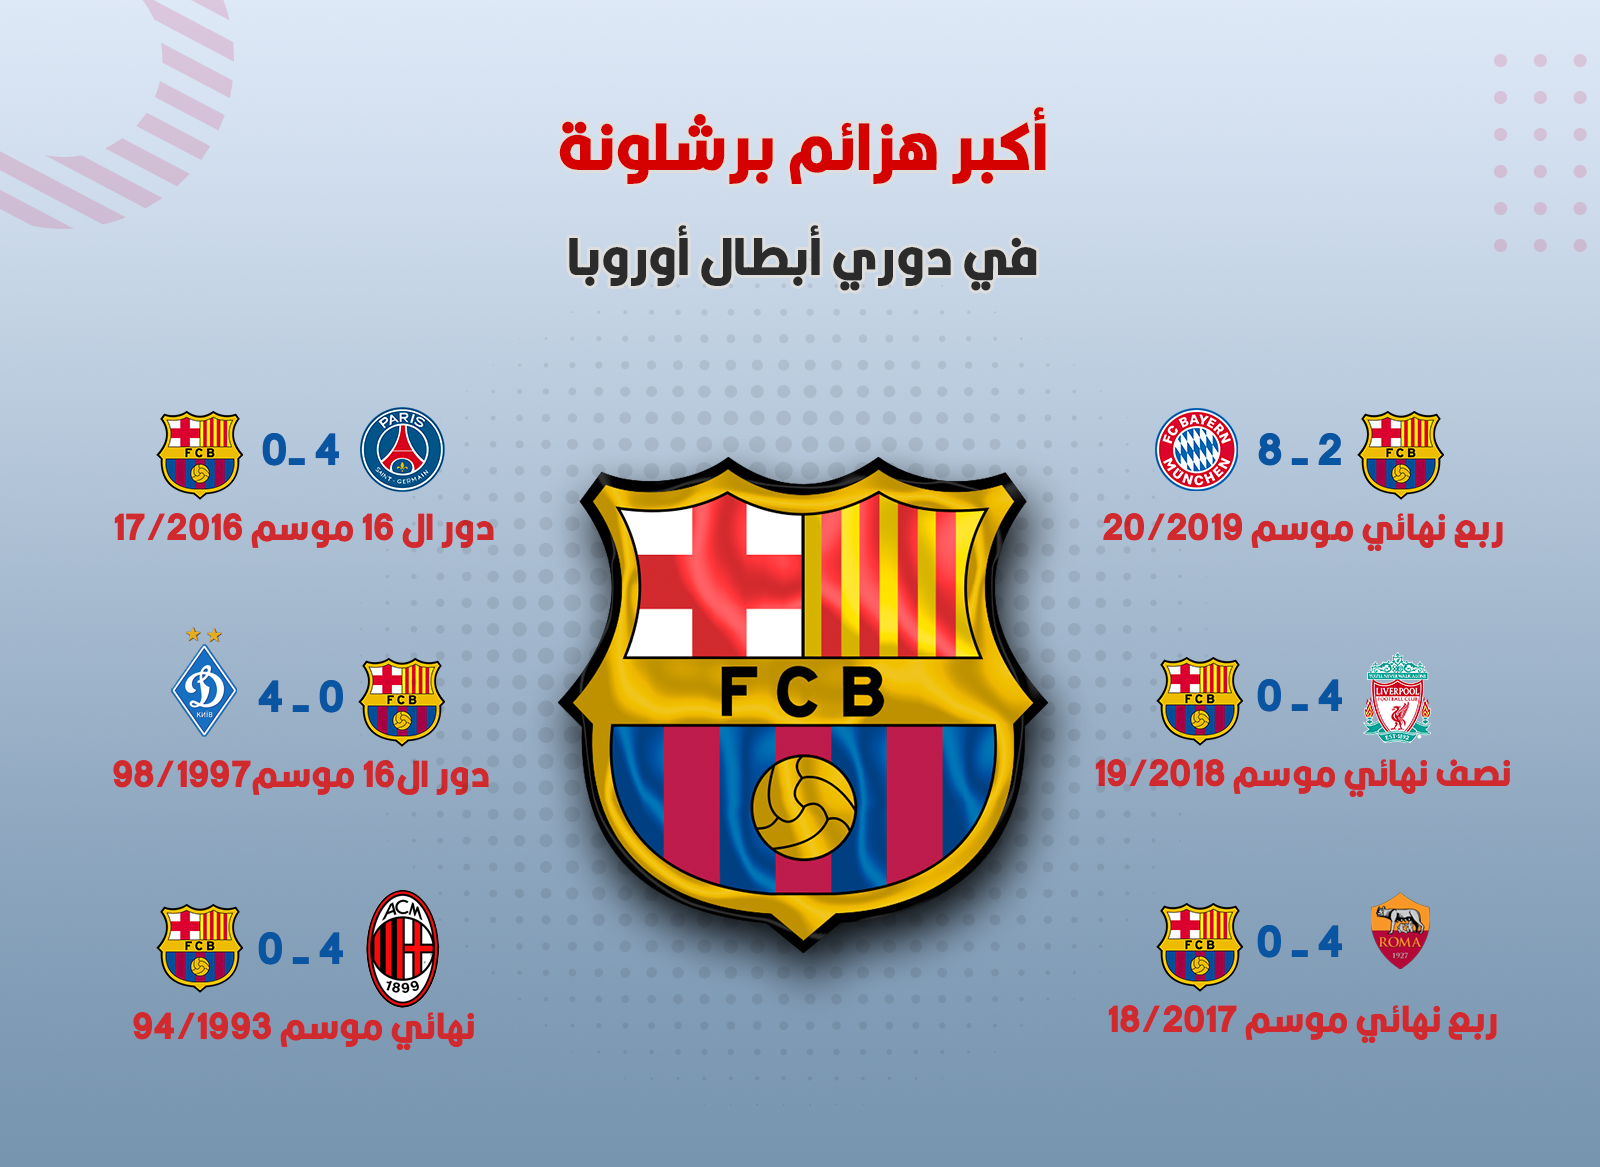 أكبر هزائم برشلونة بتاريخ دوري أبطال أوروبا.png